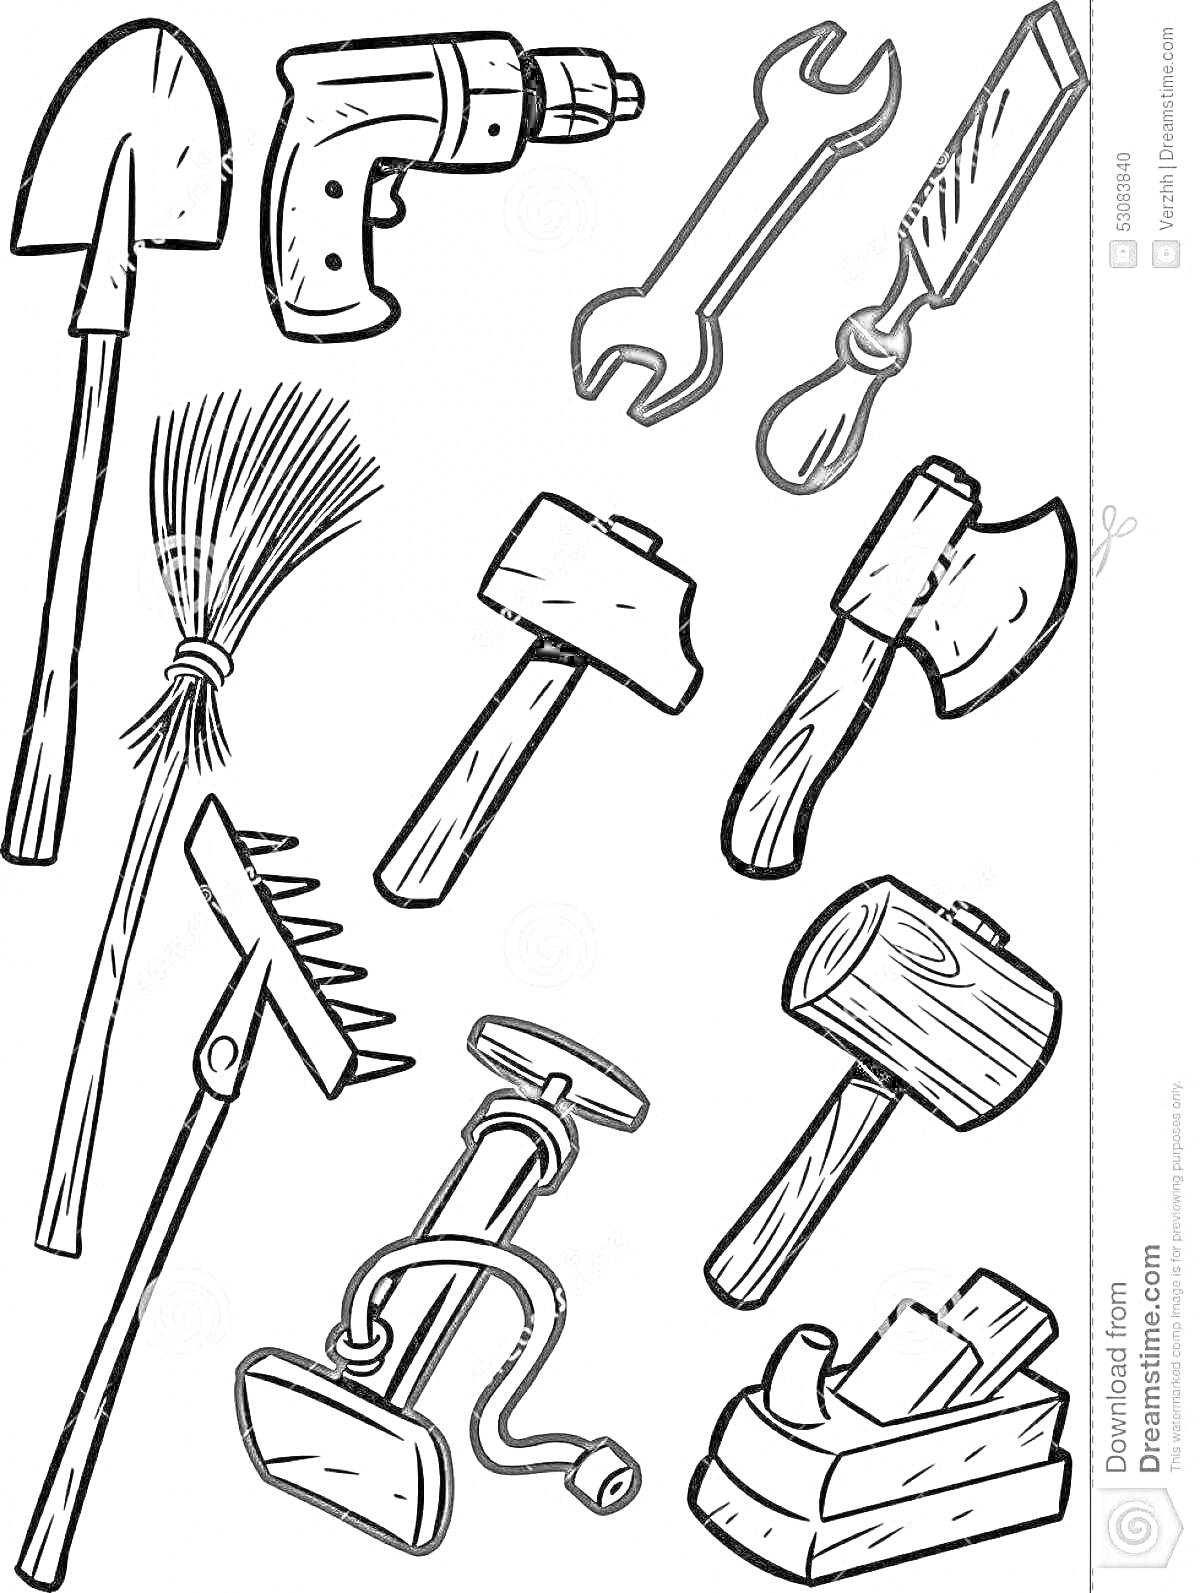 На раскраске изображено: Лопата, Дрель, Гаечный ключ, Метла, Молоток, Грабли, Ремонт, Строительство, Деревообработка, Инструмент, Топоры